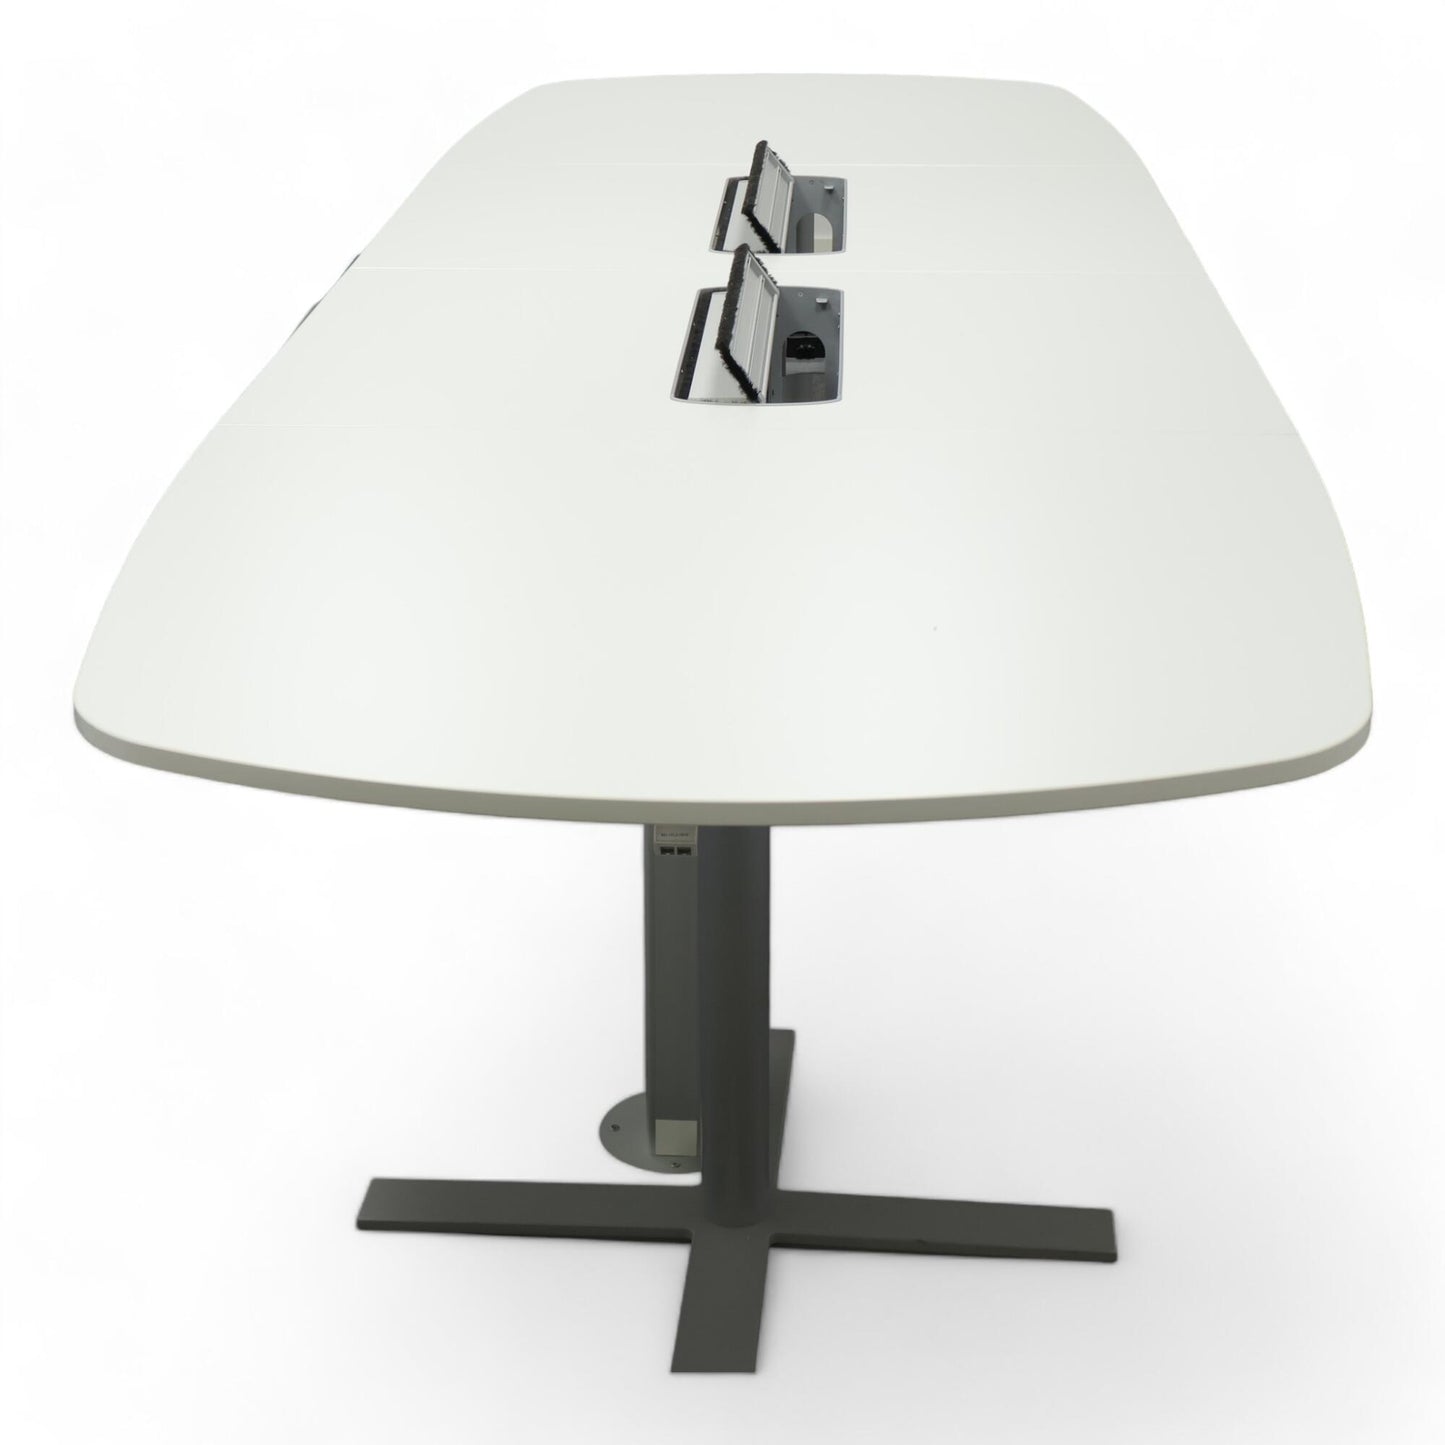 Nyrenset | Kinnarps 'Angle' hvitt konferansebord med Oberon-modell kabelluker